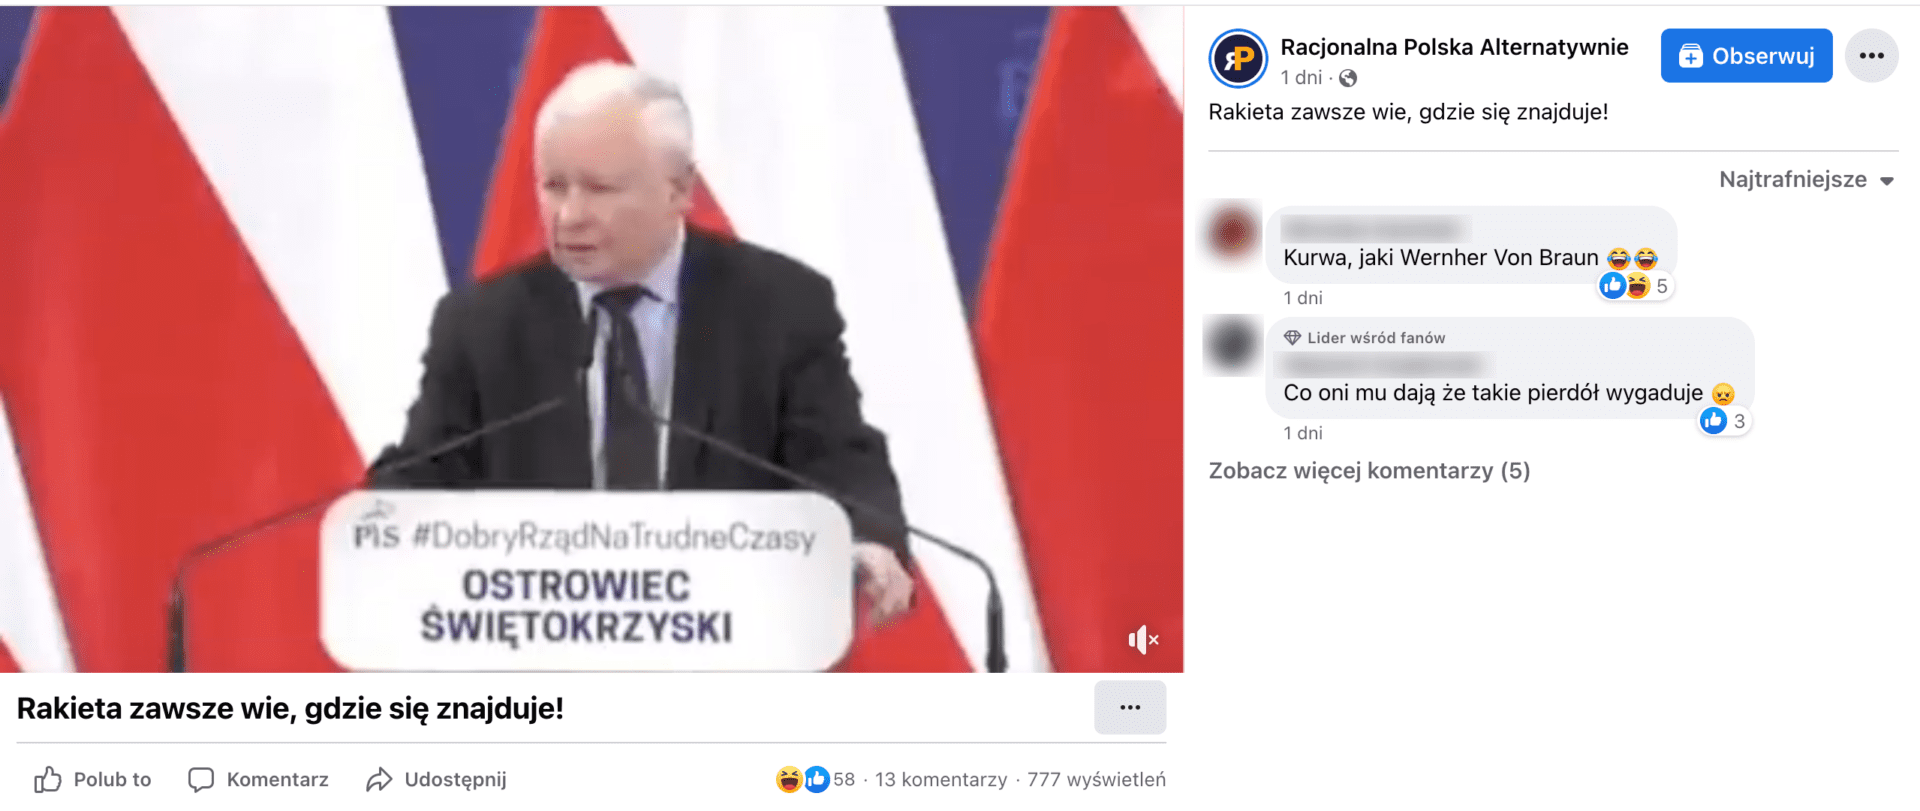 Zrzut ekranu omawianego posta. Widoczny jest Jarosław Kaczyński na tle biało-czerwonych flag. Przed nim napis: „PiS #DobryRządNaTrudneCzasy” oraz „Ostrowiec Świętokrzyski”.